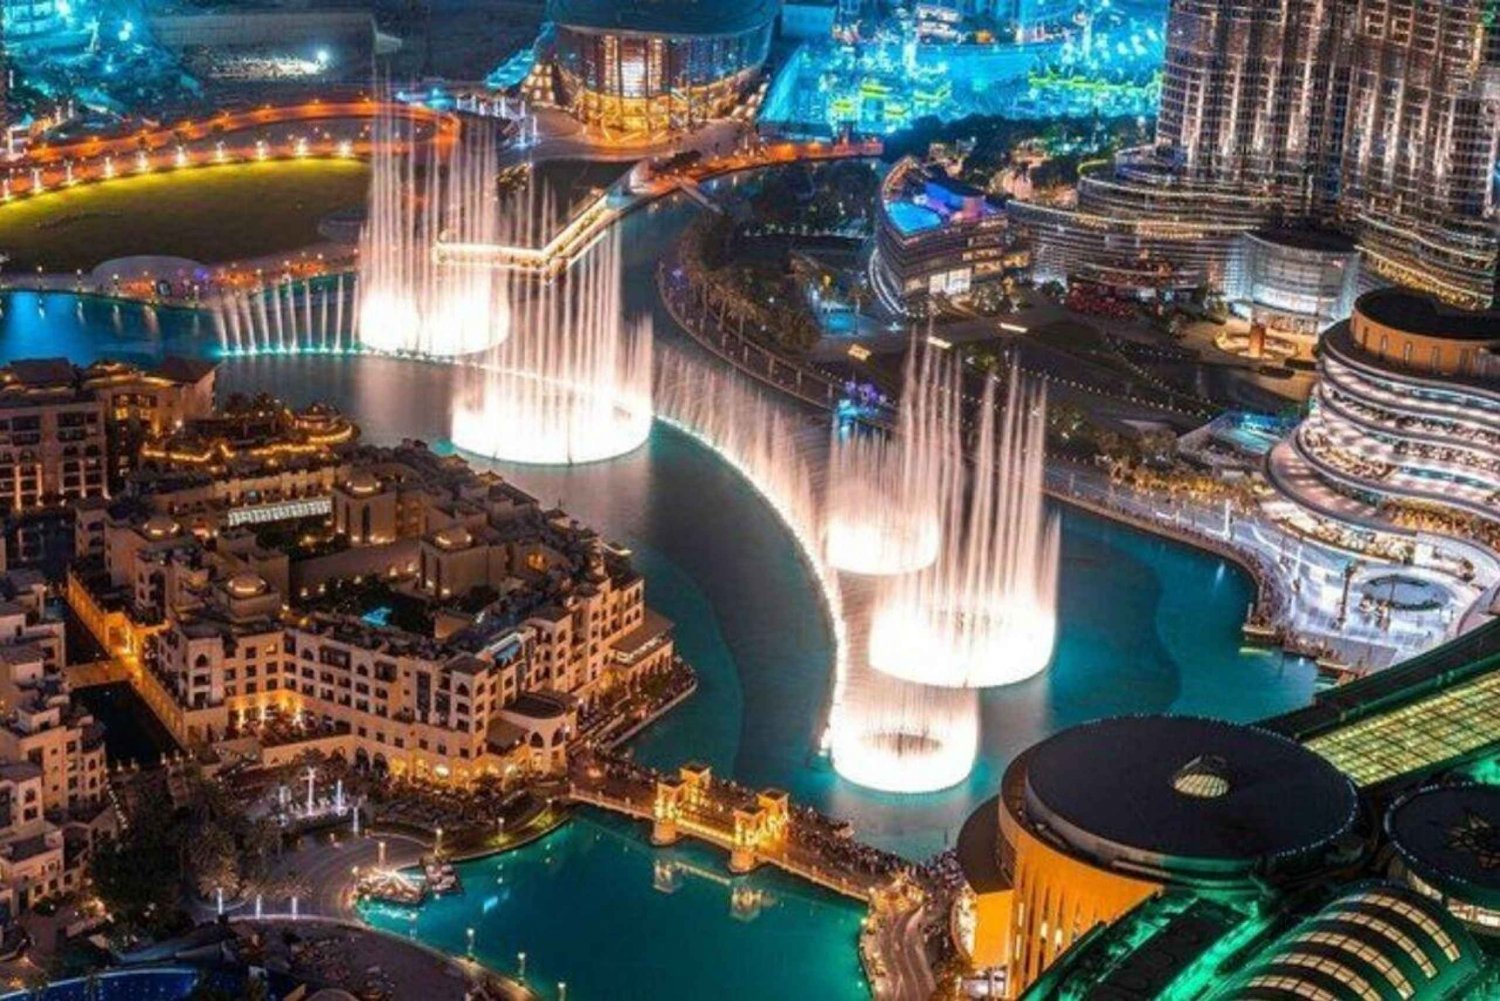 Dubai: Fountain Show'lla varustetun yöllisen kaupunkikierroksen aikana.